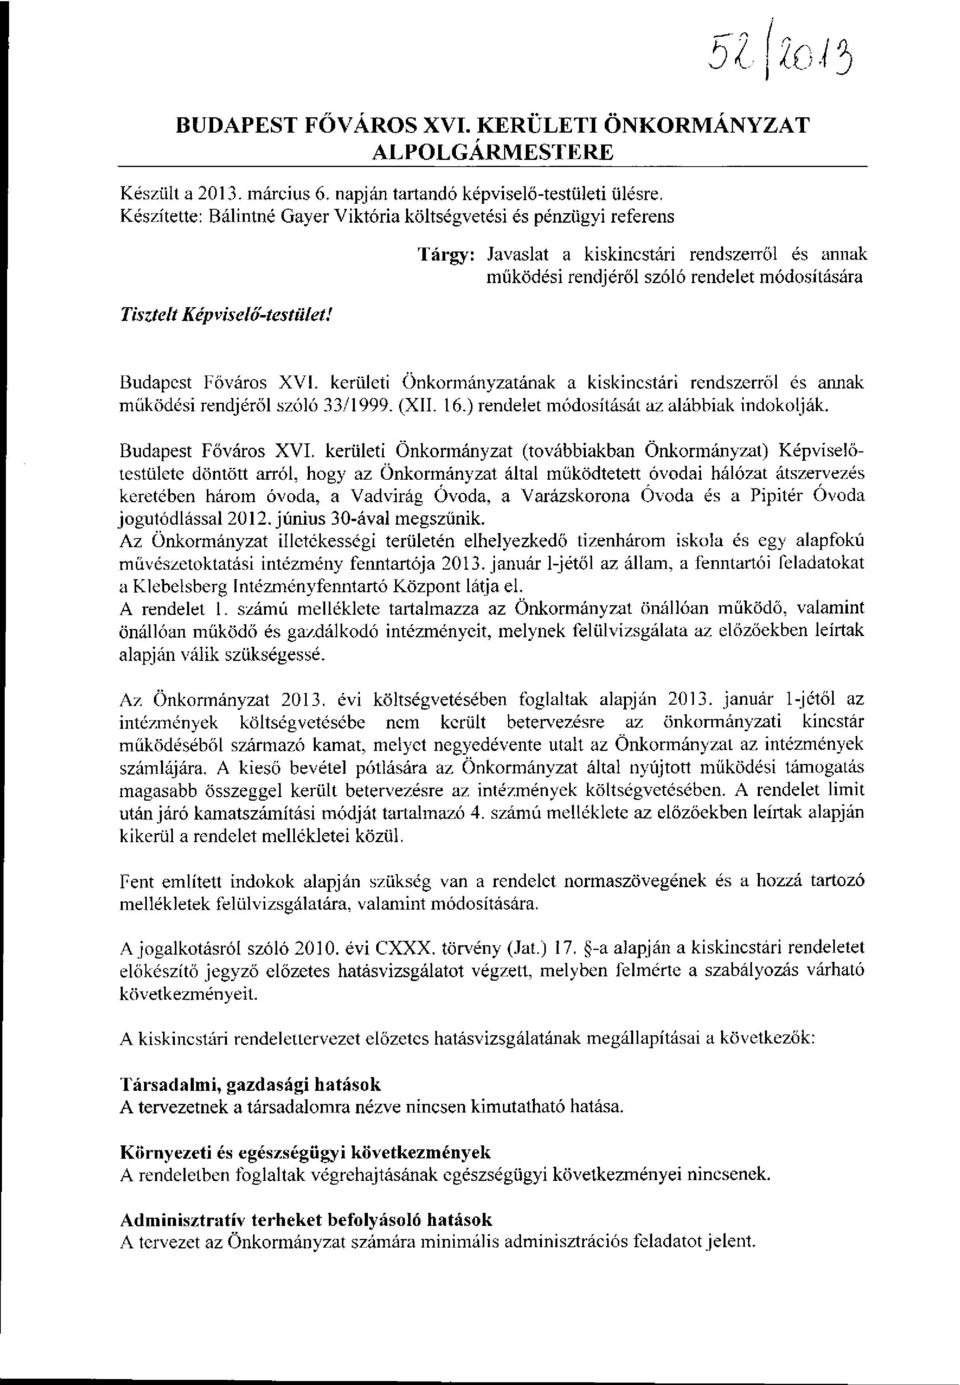 Képviselő-testület! Budapest Főváros XVI. kerületi Önkormányzatának a kiskincstári rendszerről és annak működési rendjéről szóló 33/1999. (XII. 16.) rendelet módosítását az alábbiak indokolják.